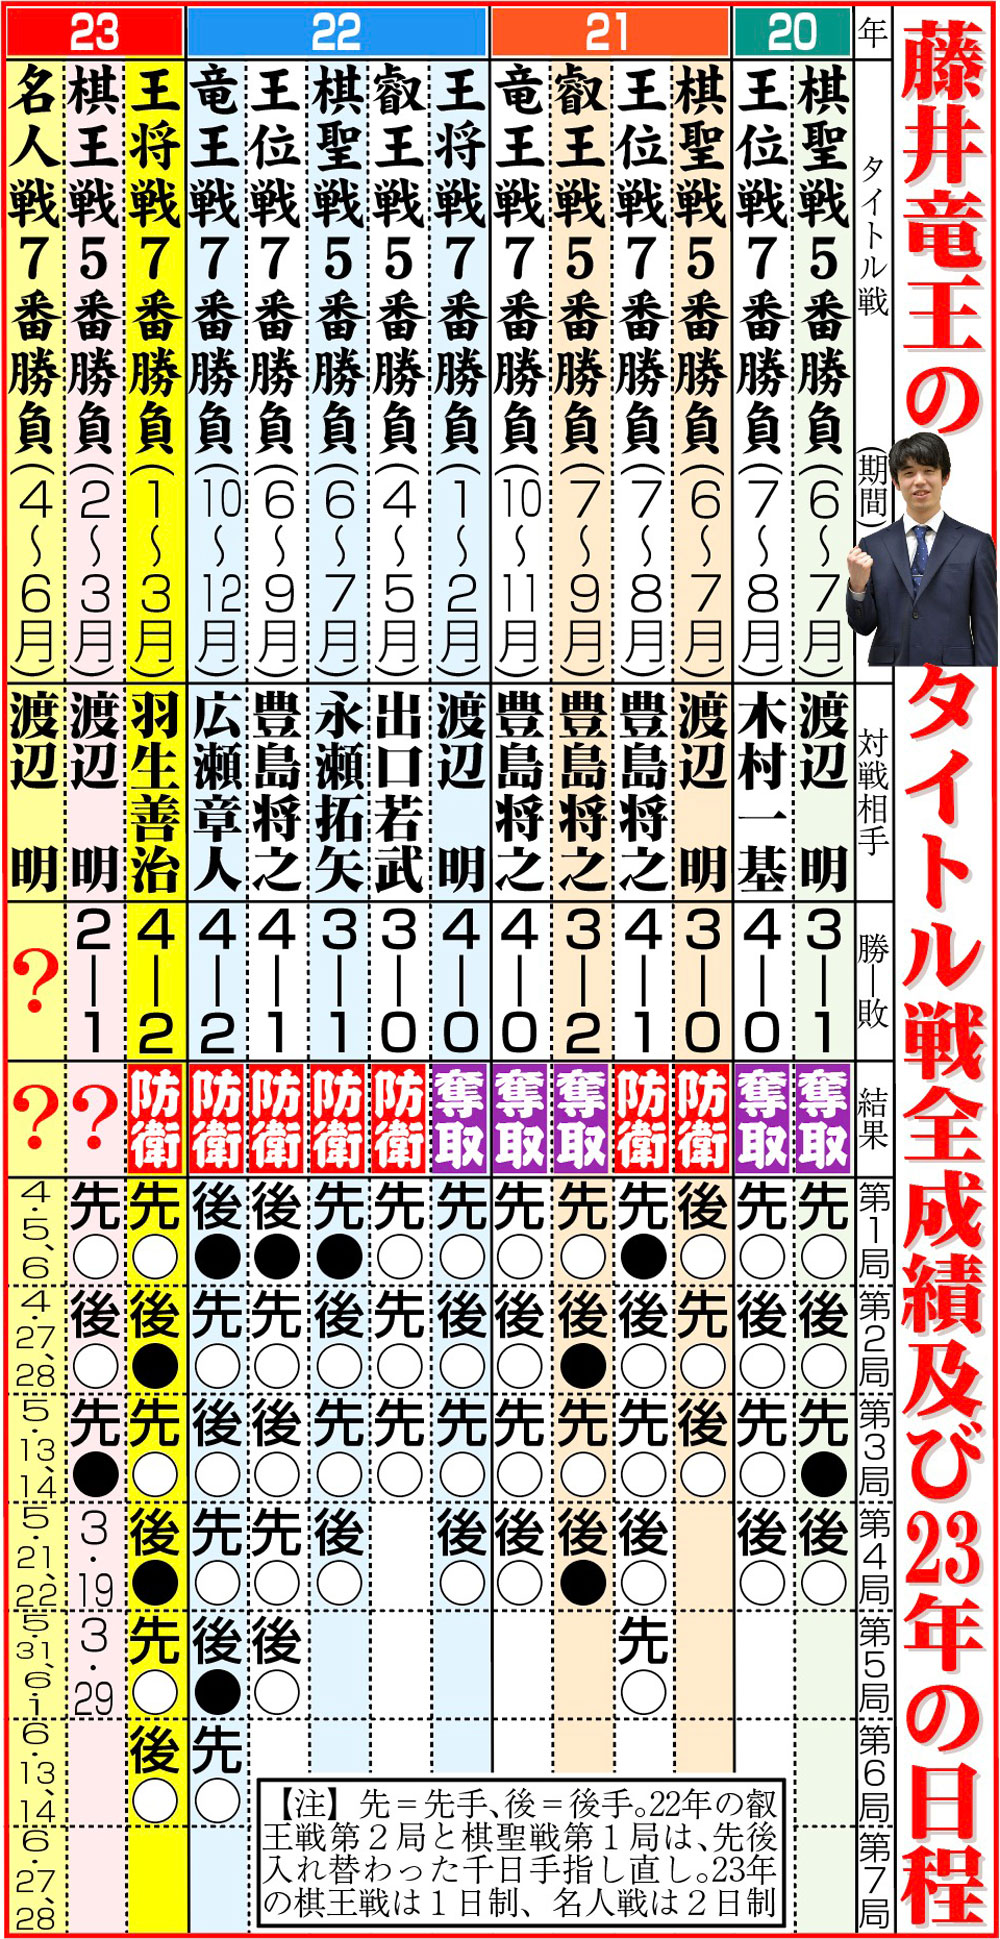 【イラスト】藤井竜王のタイトル戦全成績及び23年の日程